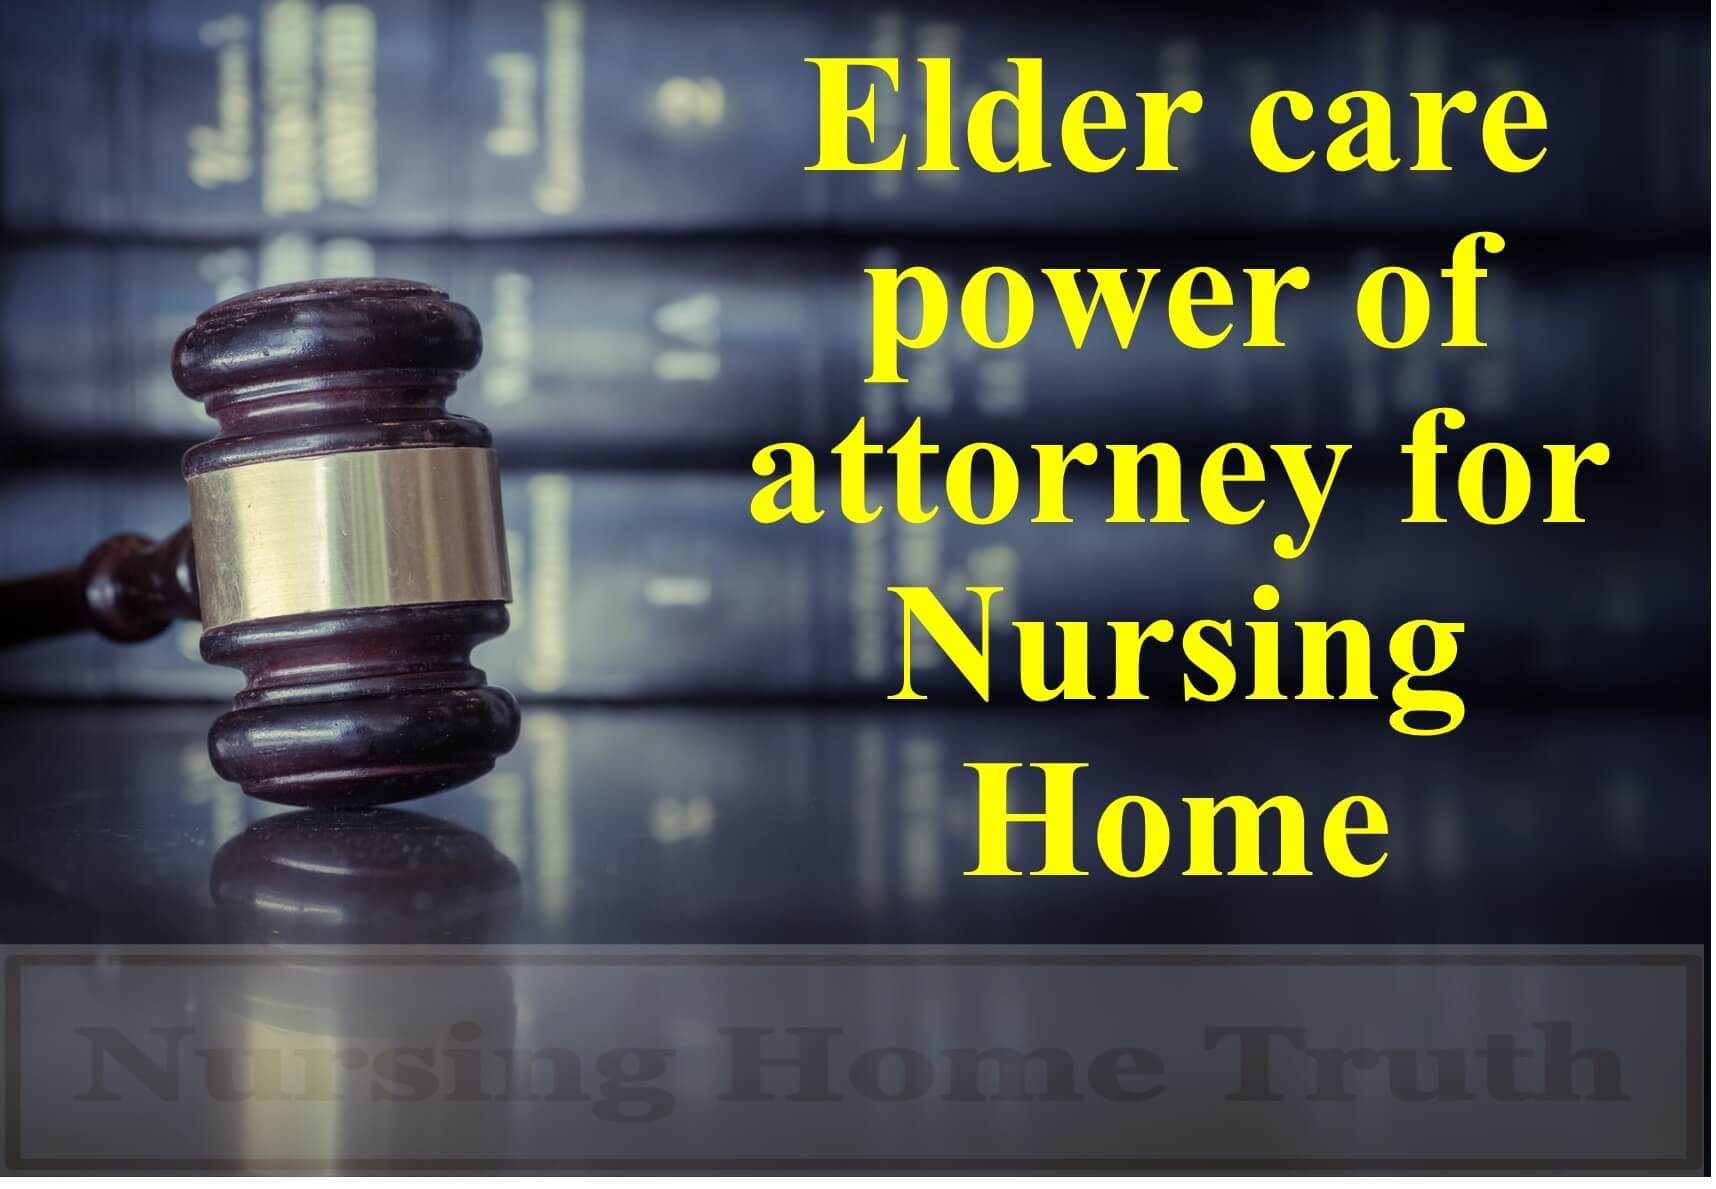 Elder Care Power of Attorney for Nursing Home